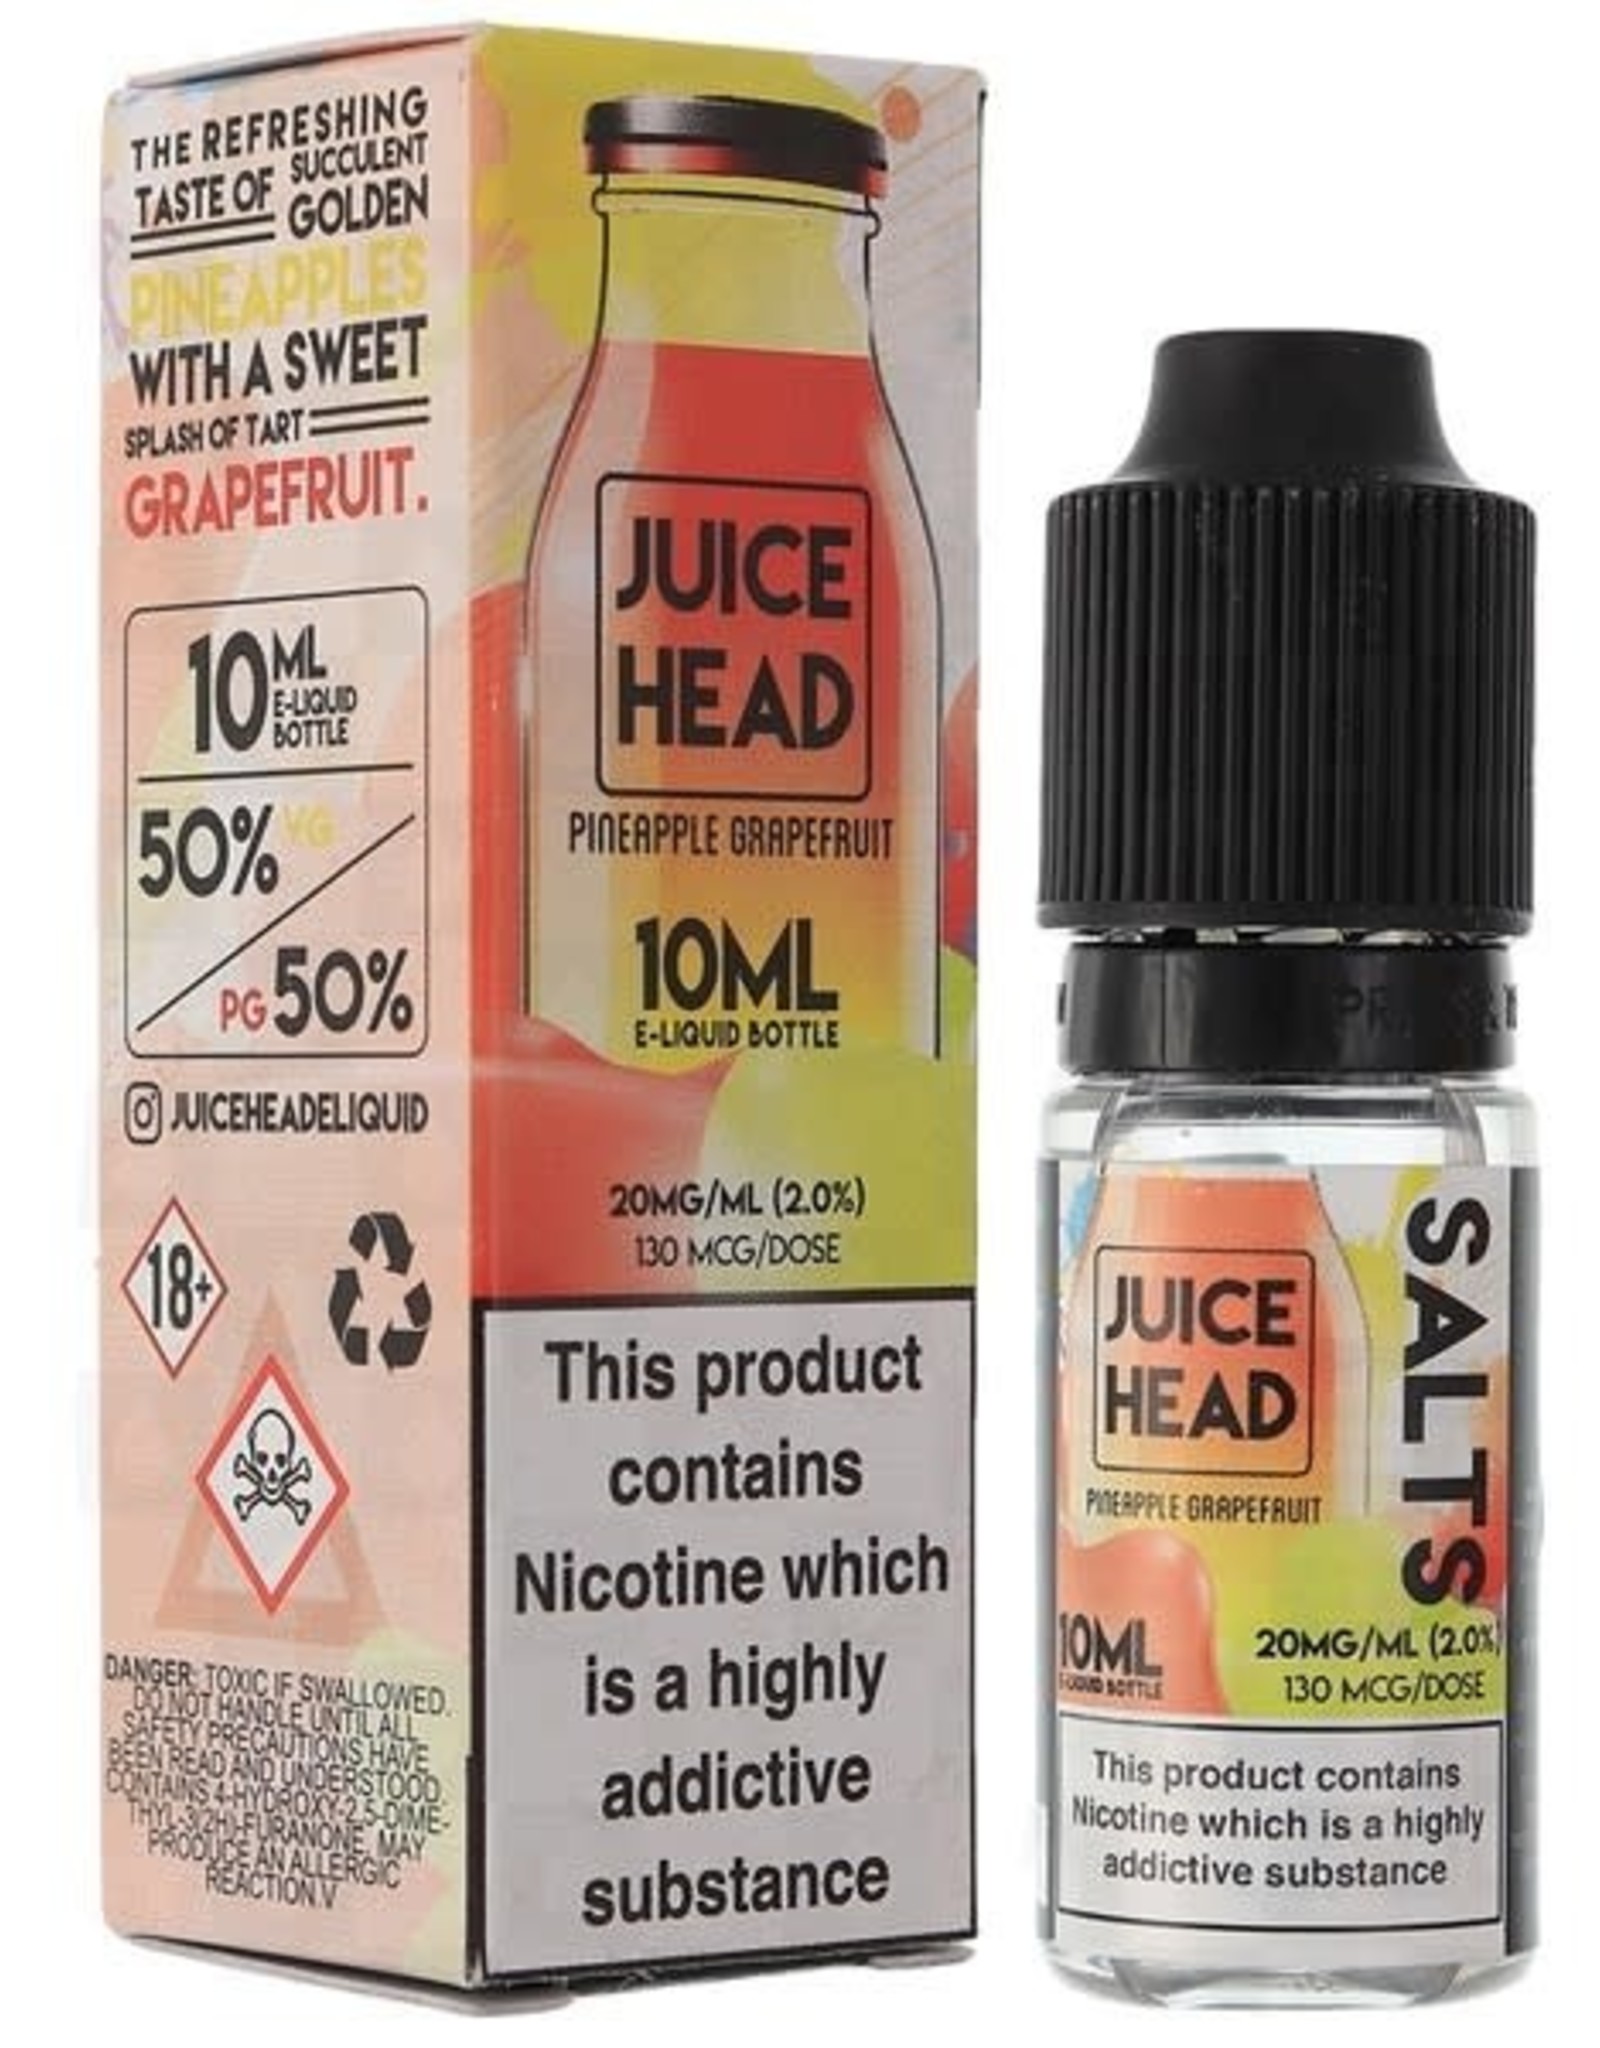 Juice Head Juice Head - Pineapple Grapefruit 10ml 20mg